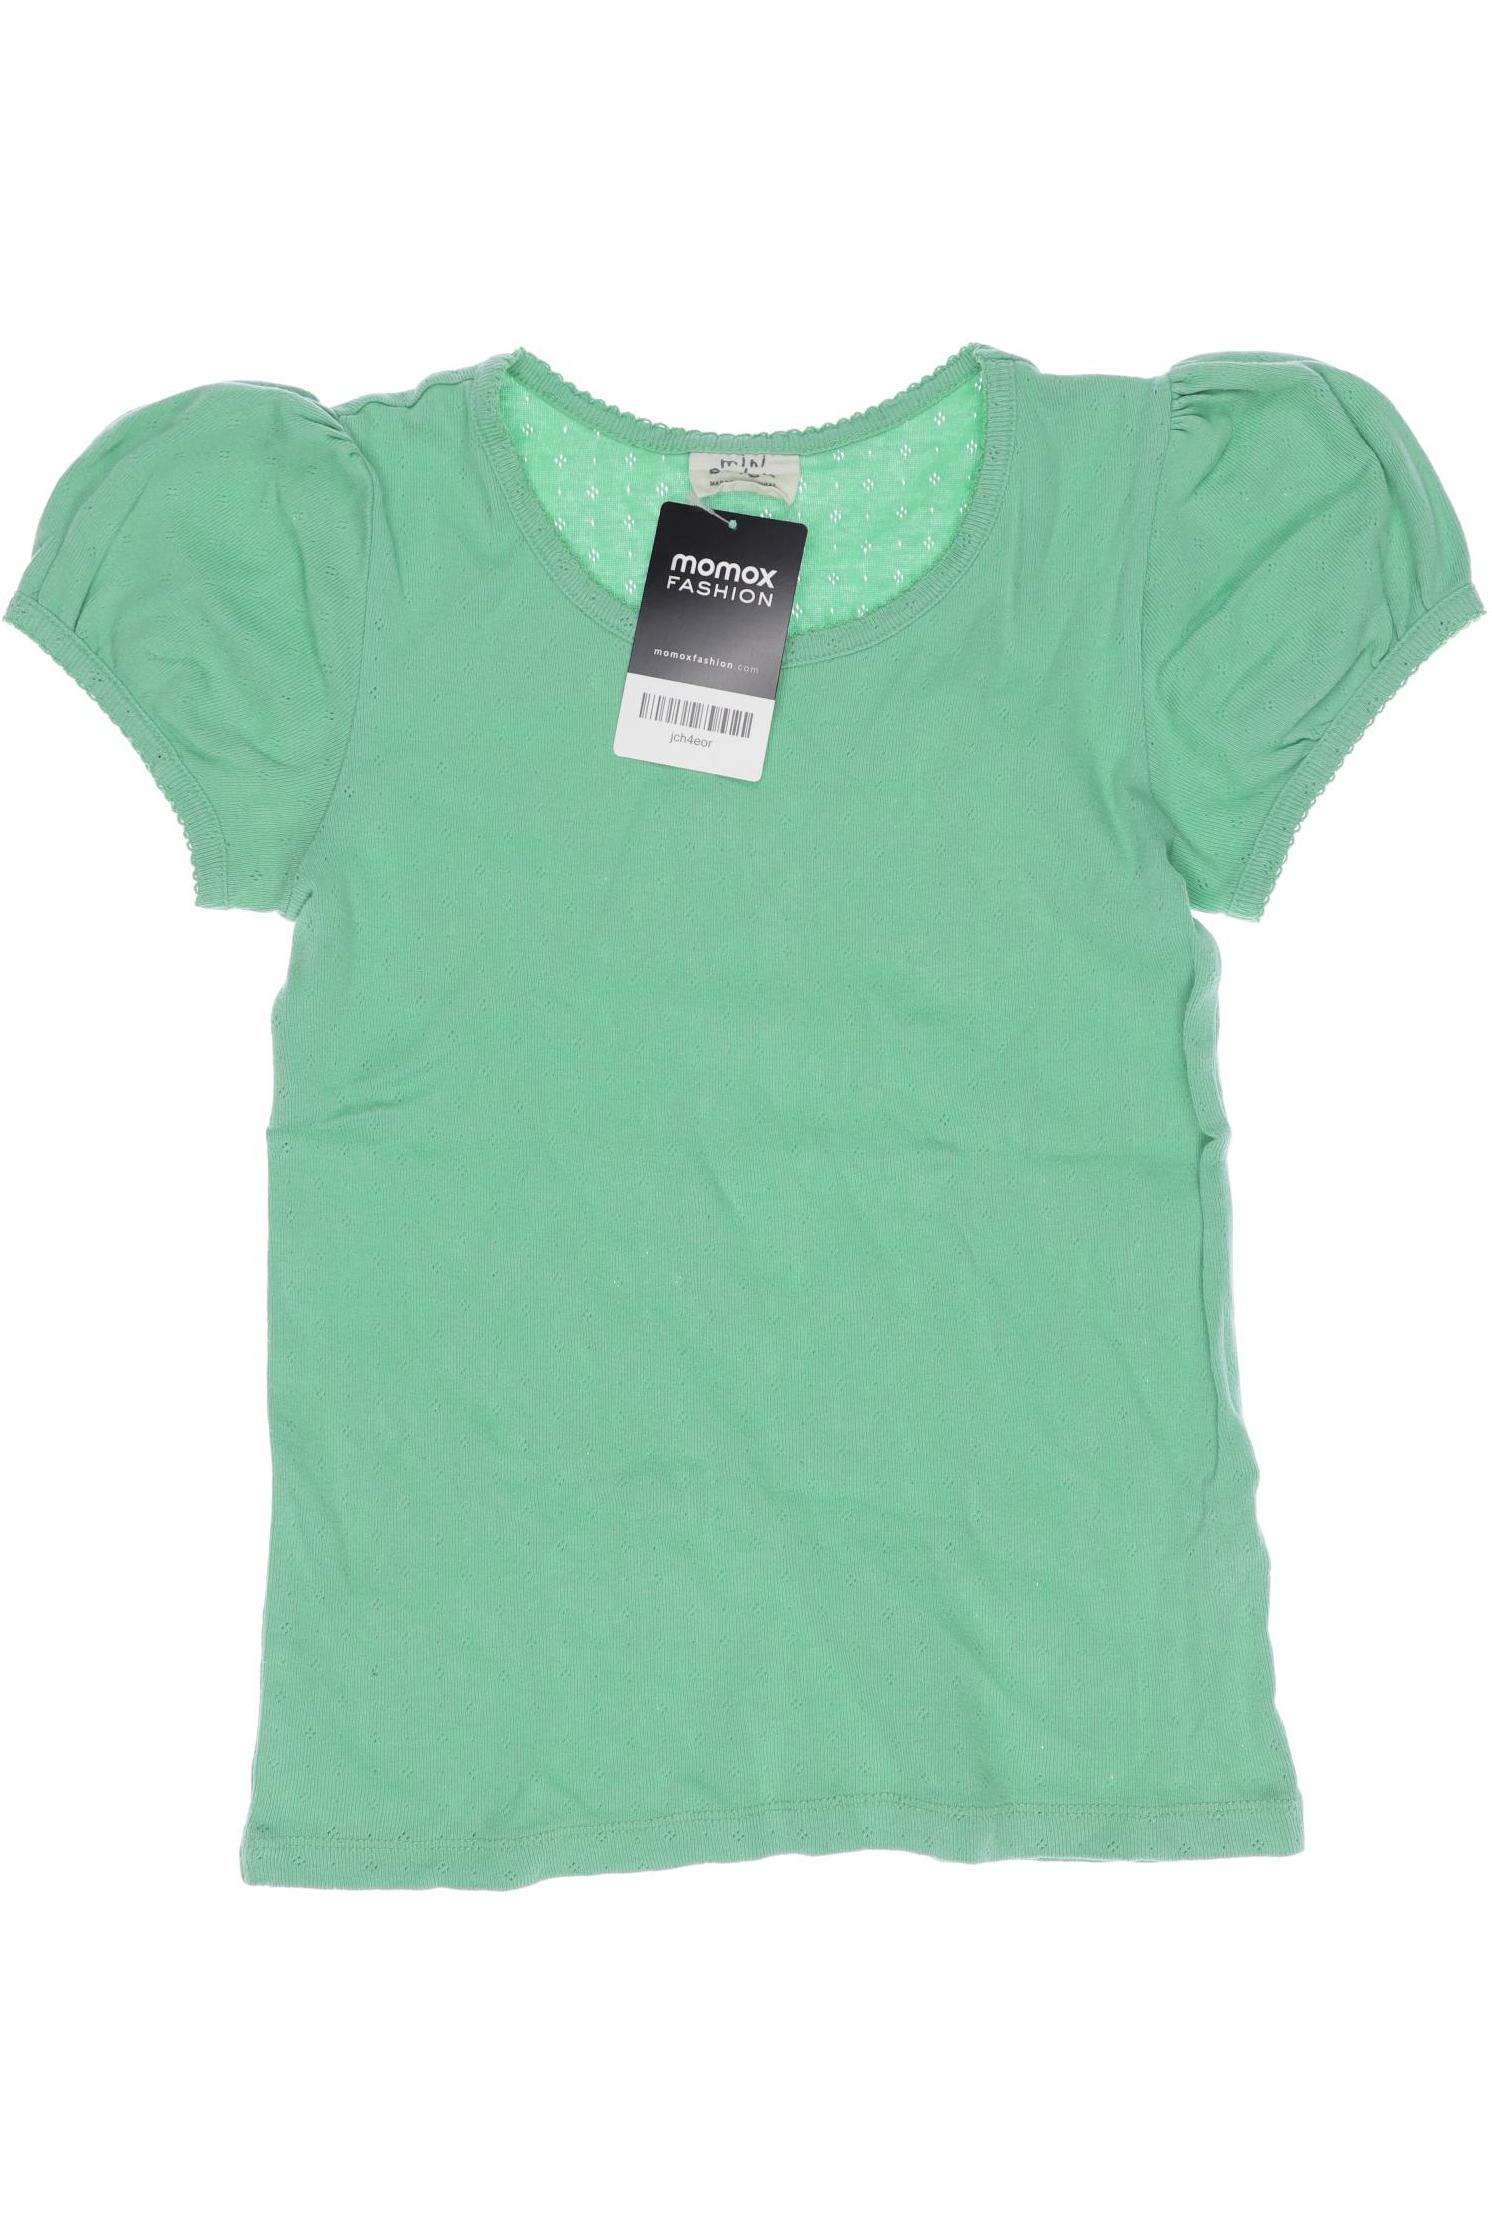 Mini Boden Mädchen T-Shirt, grün von Mini Boden